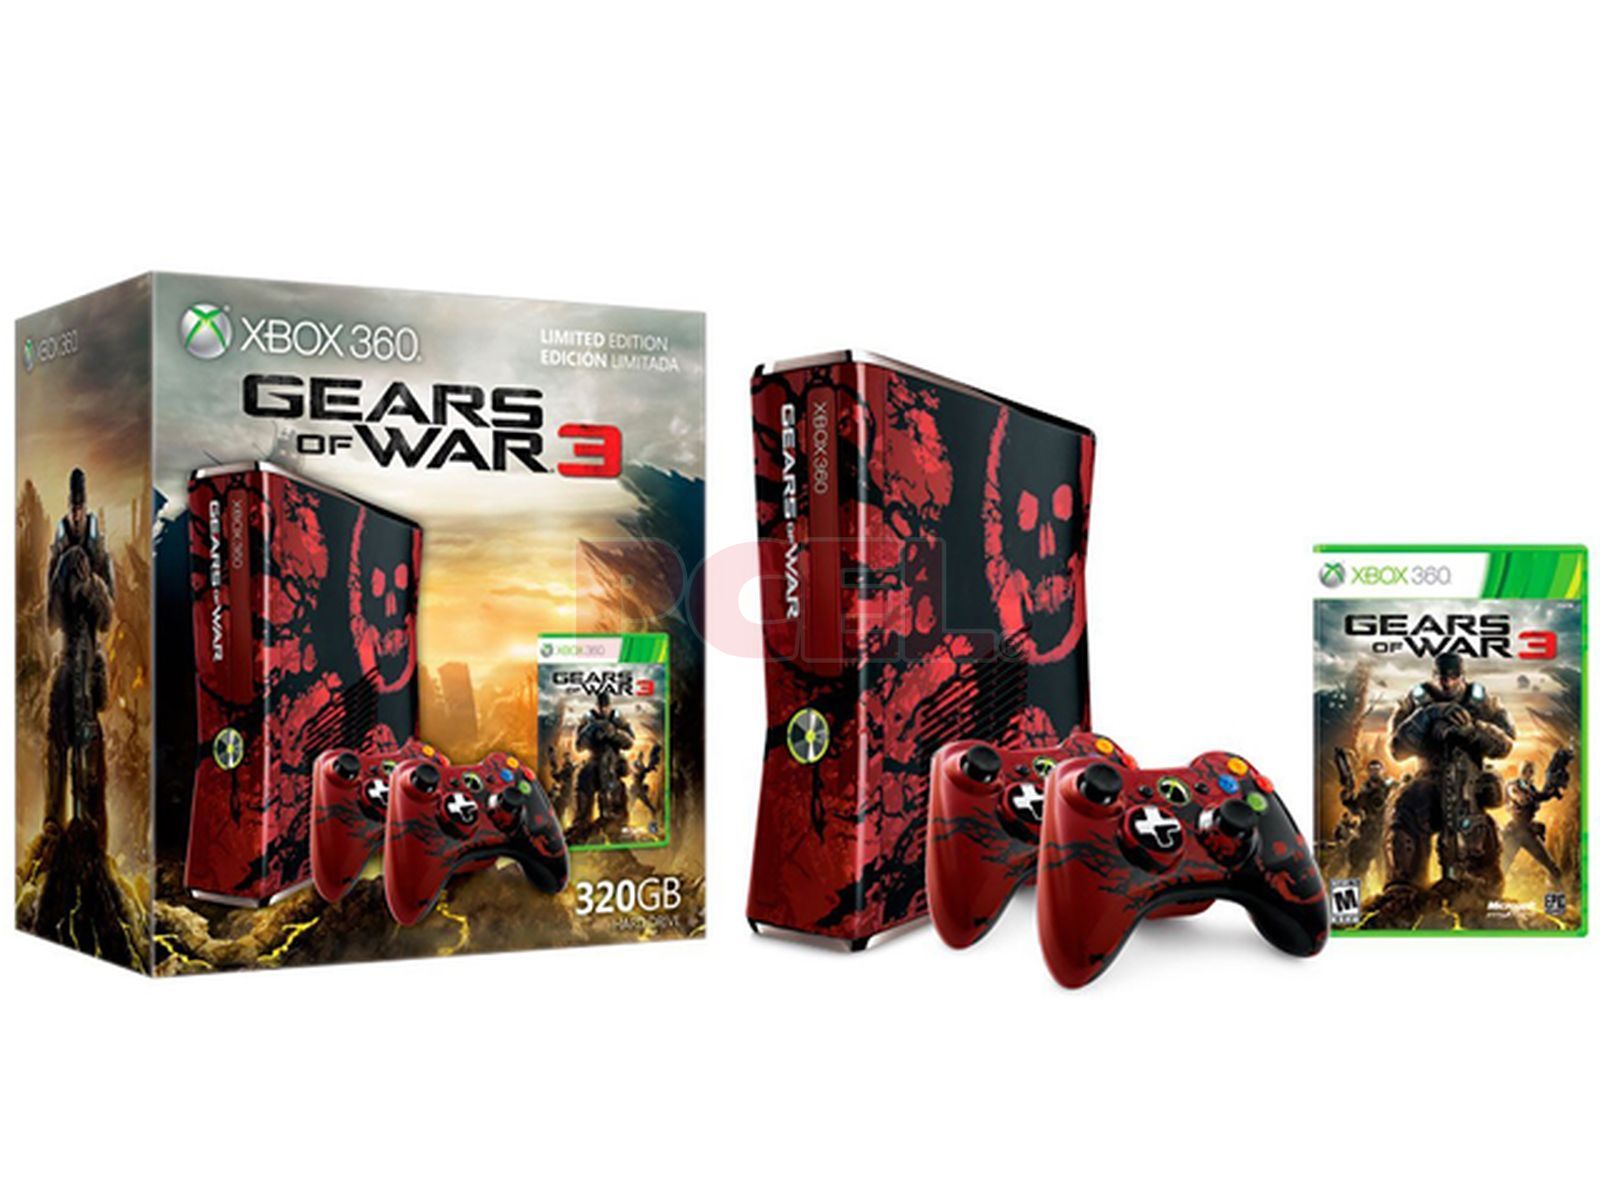 Consola Xbox 360 Slim, Edición Limitada Gears of War 3, incluye